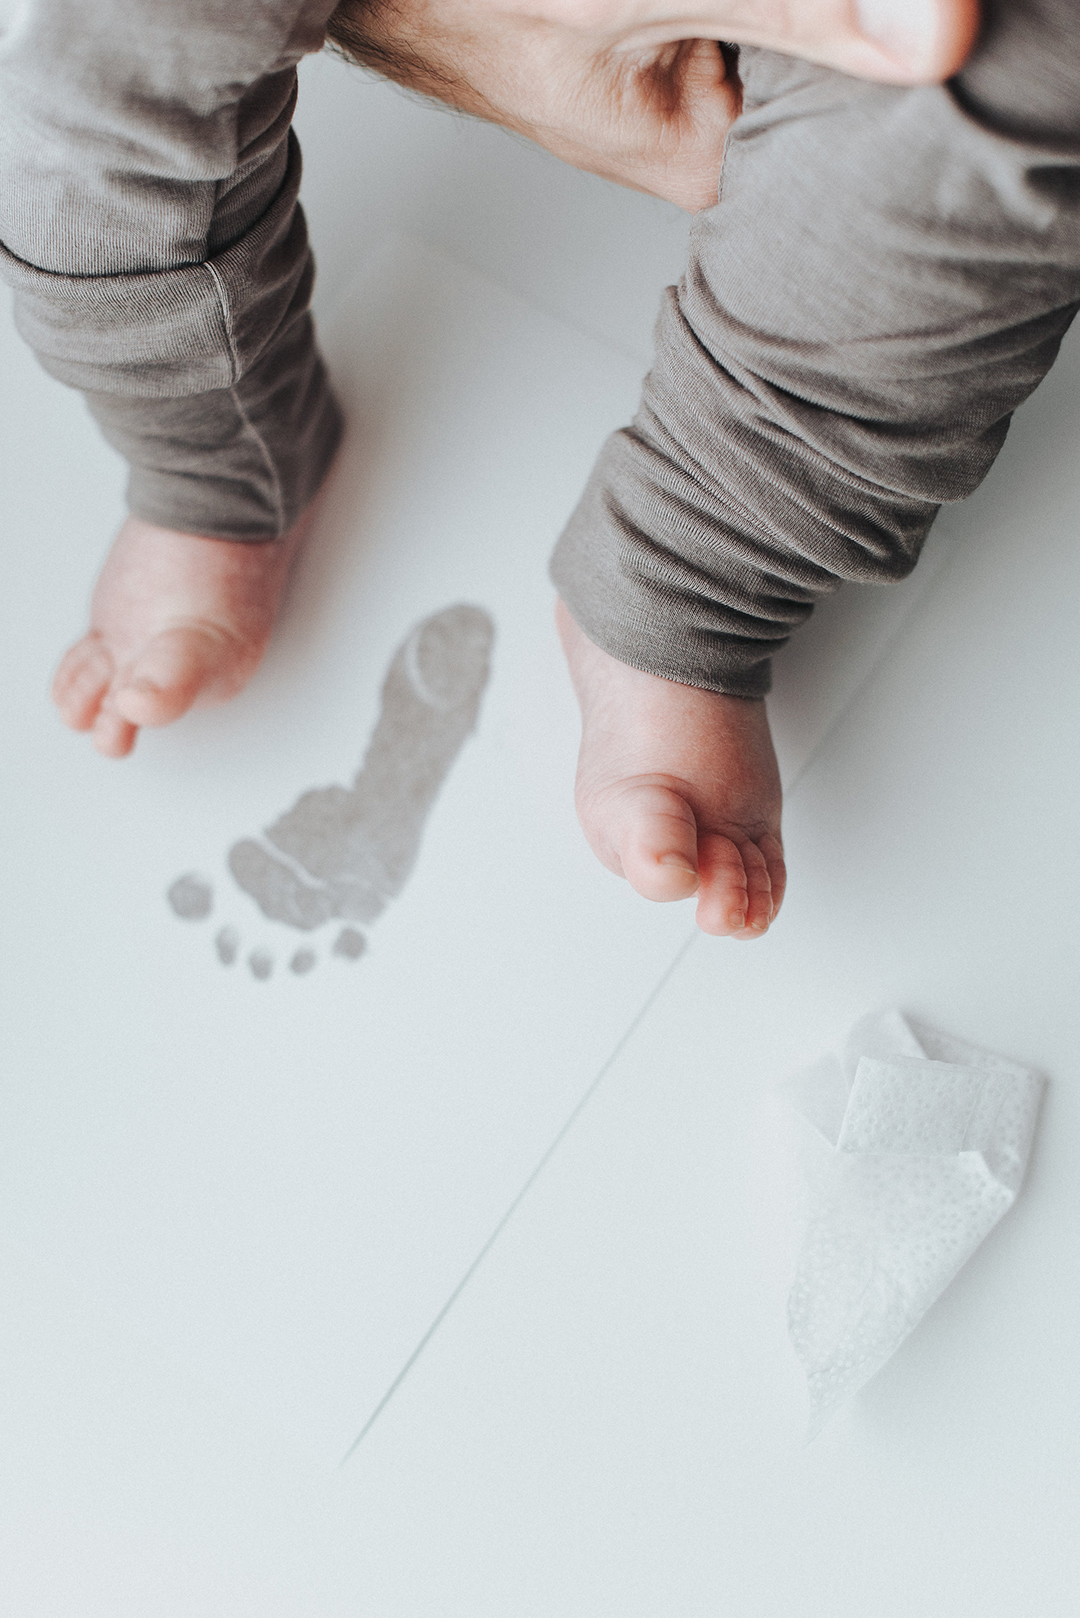 inkless baby footprint